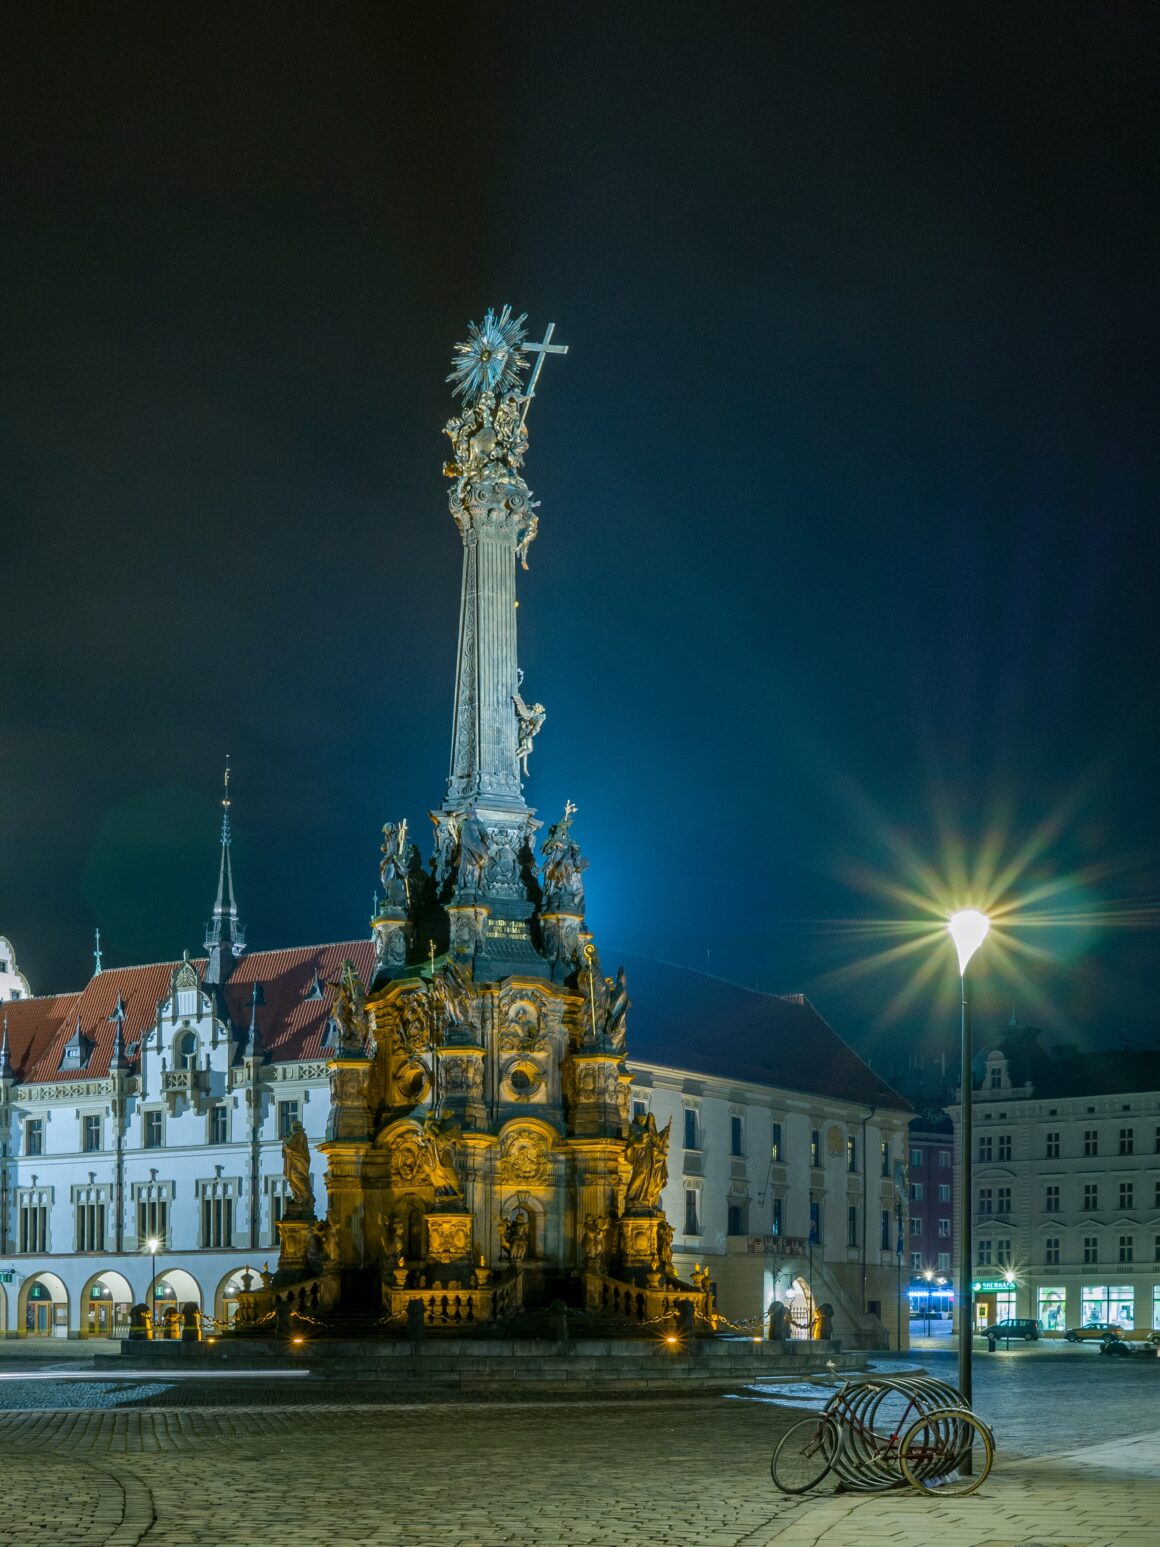 The Czech town of Olomouc